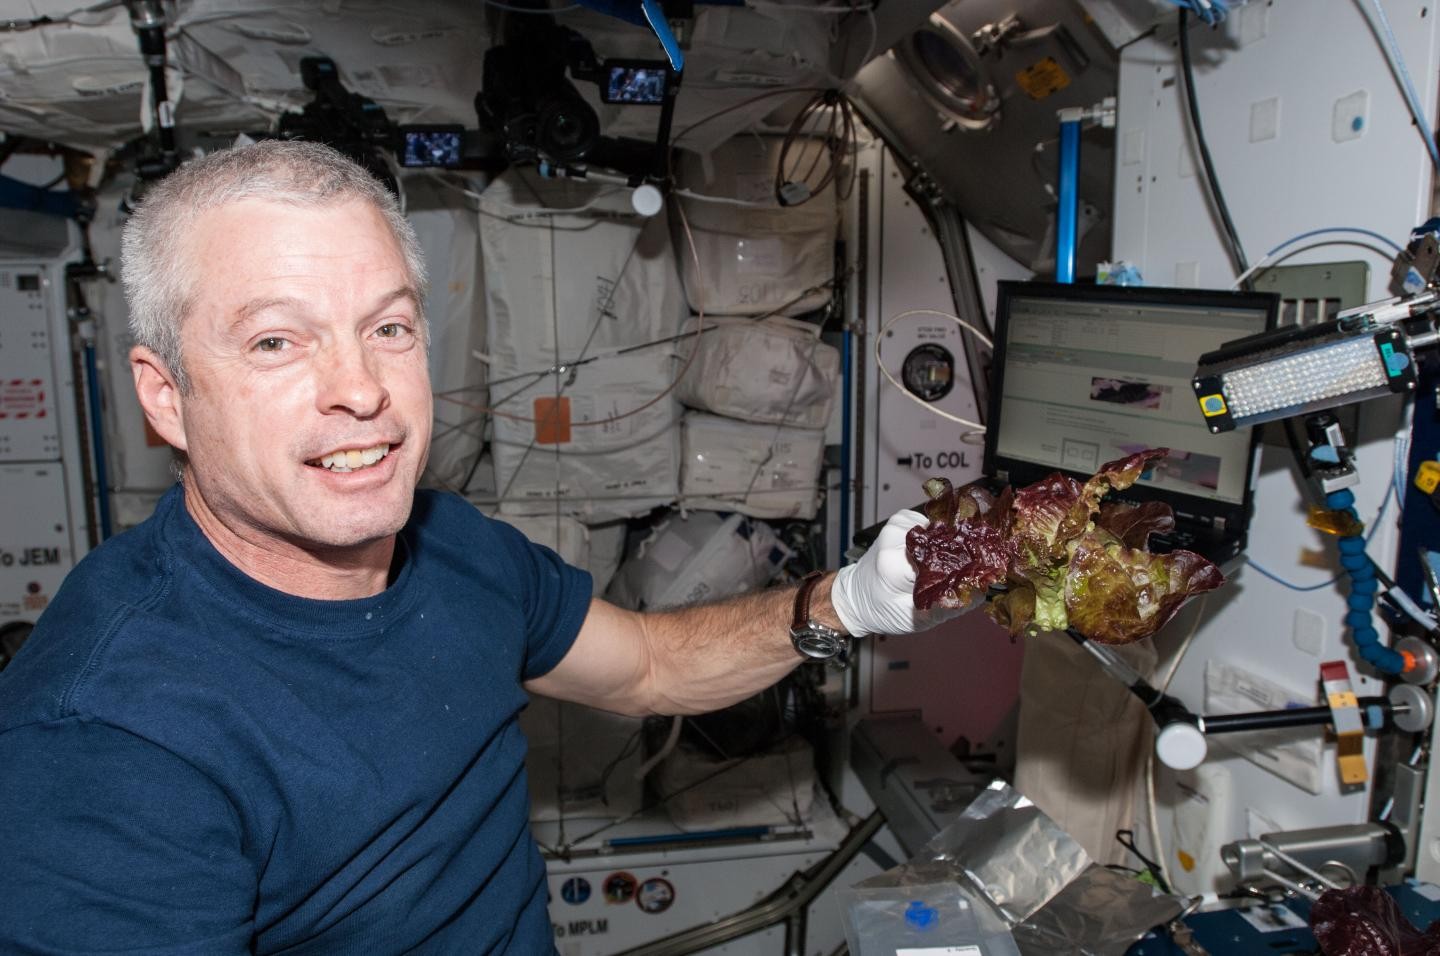 Alface cultivada no Espaço é tão nutritiva quanto a da Terra. O astronauta Steve Swanson em 2014. (Foto: NASA)